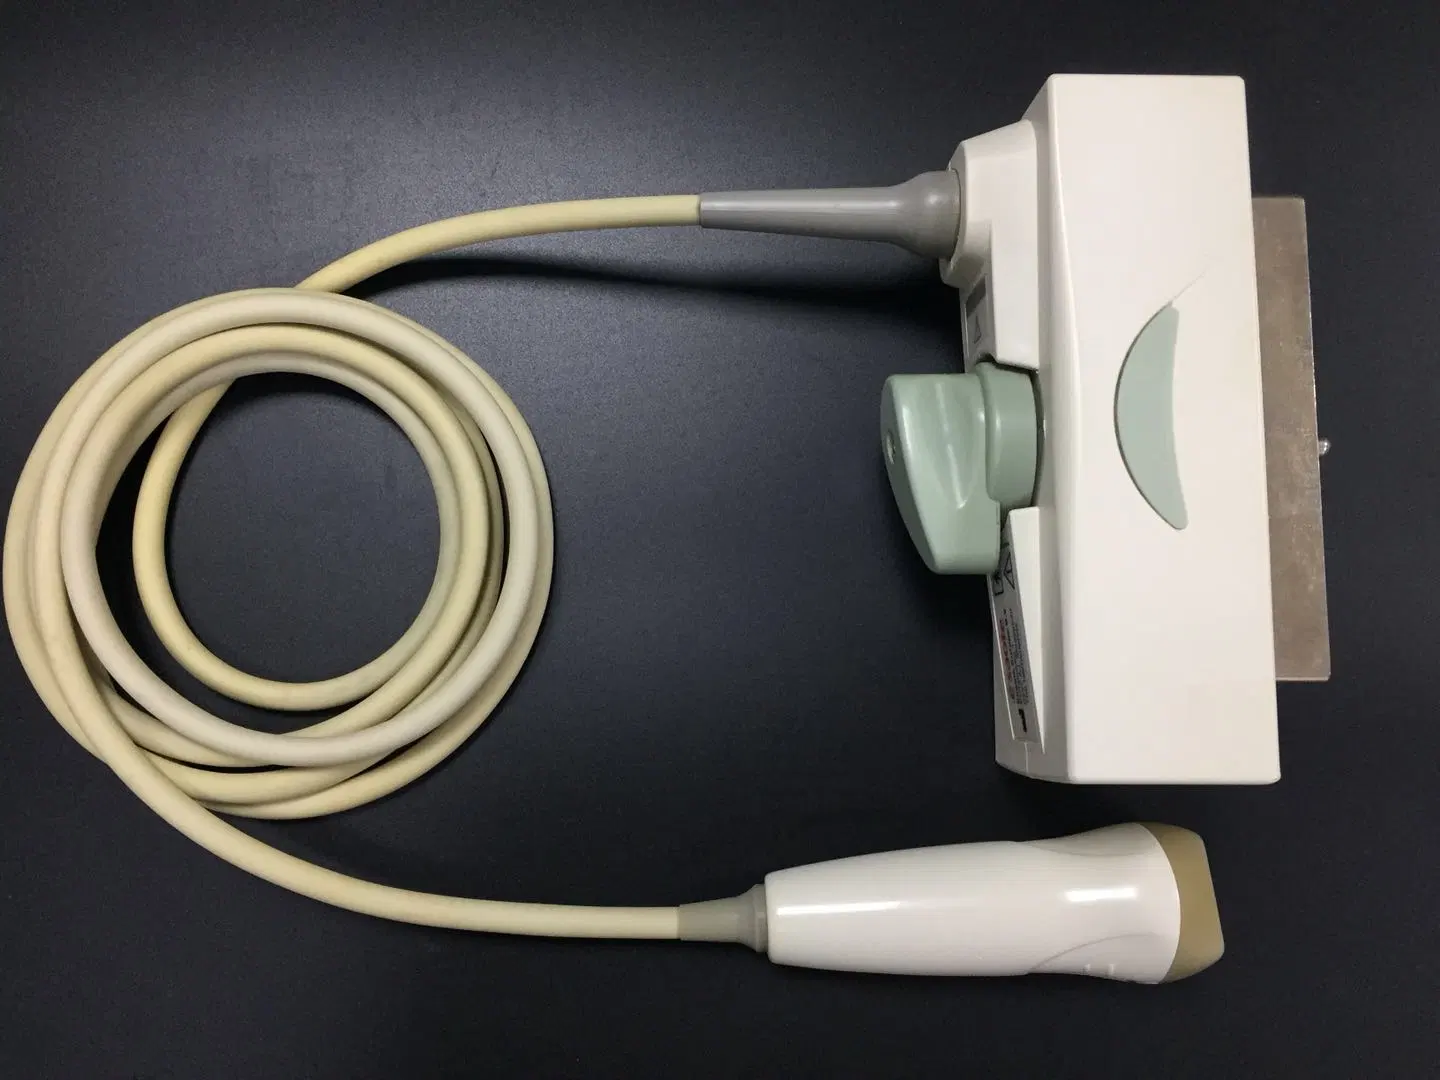 Sonda/transdutor de ultrassons PA230e para a série Mylab